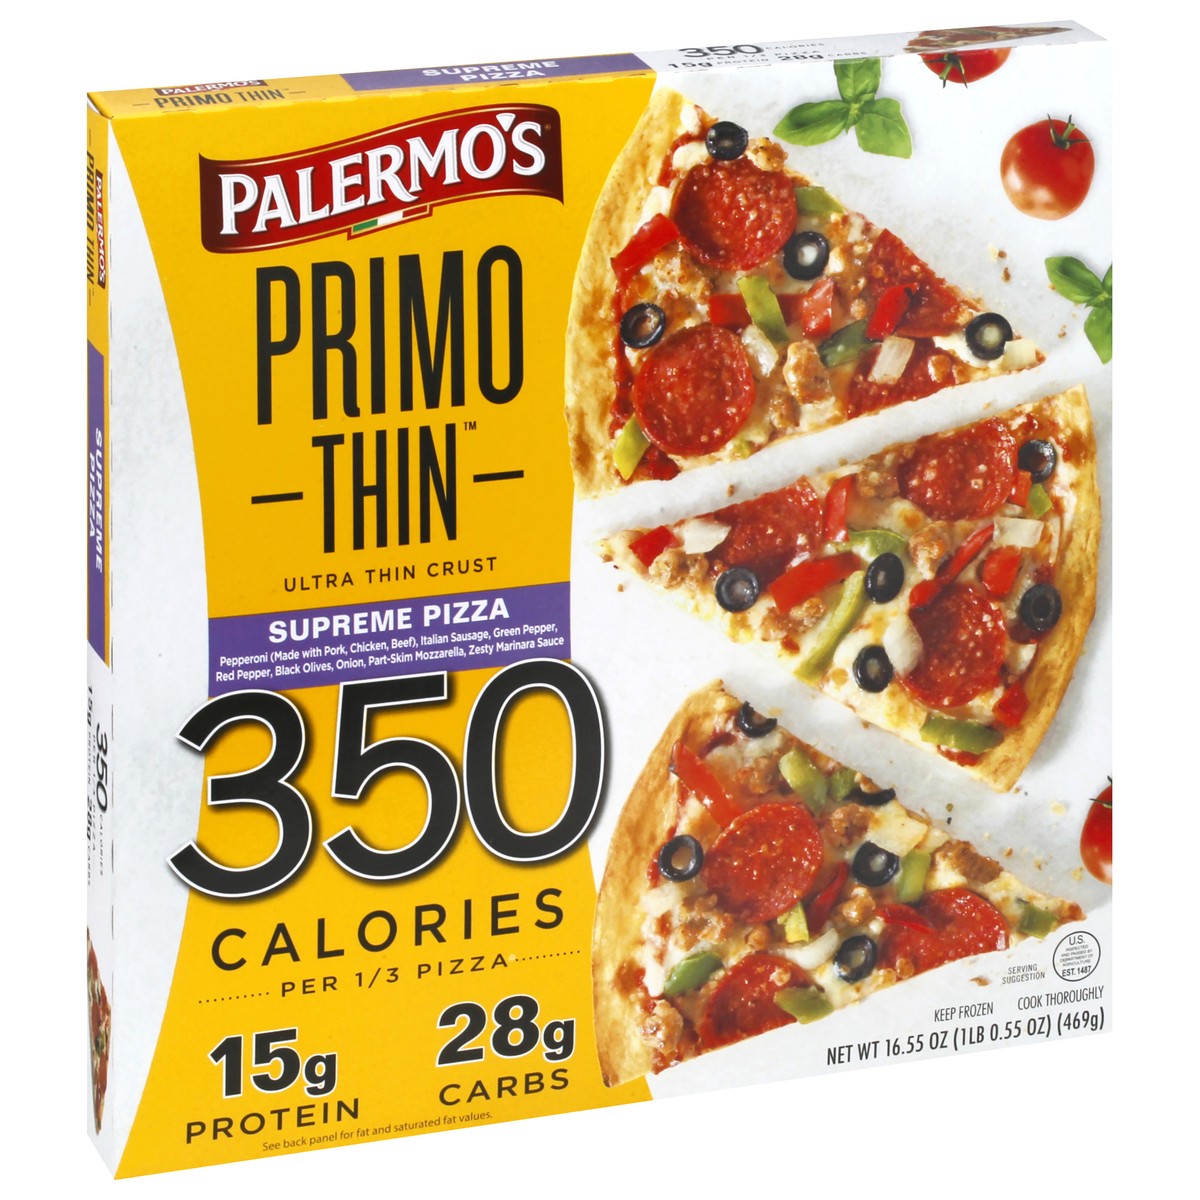 slide 9 of 9, Palermo's Primo Thin Ultra Thin Crust Supreme Pizza 16.55 oz, 16.55 oz